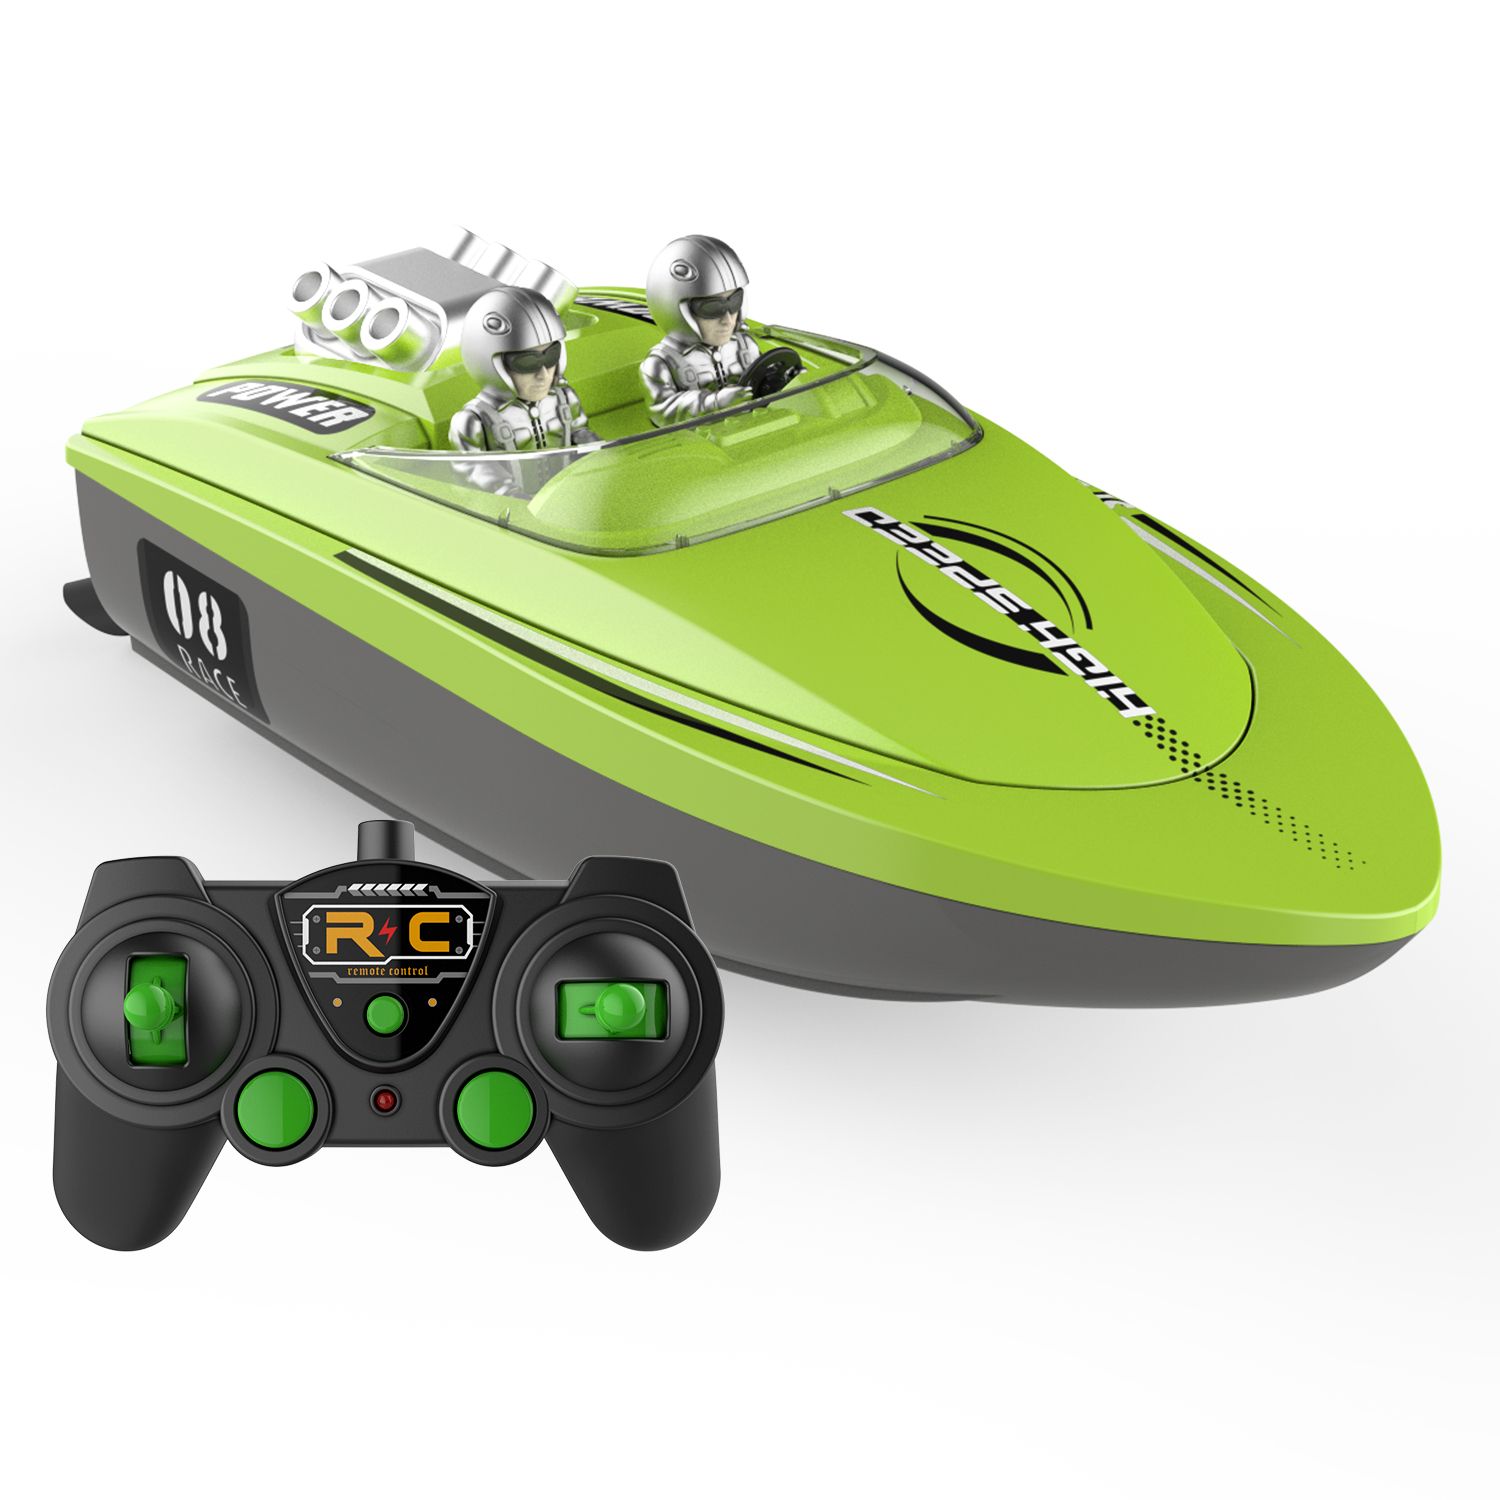 Προσαρμοσμένο αδιάβροχο σκάφος άλματος υψηλής ταχύτητας Cool Water Wireless RC Racing Boat Toys for Children Δώρο